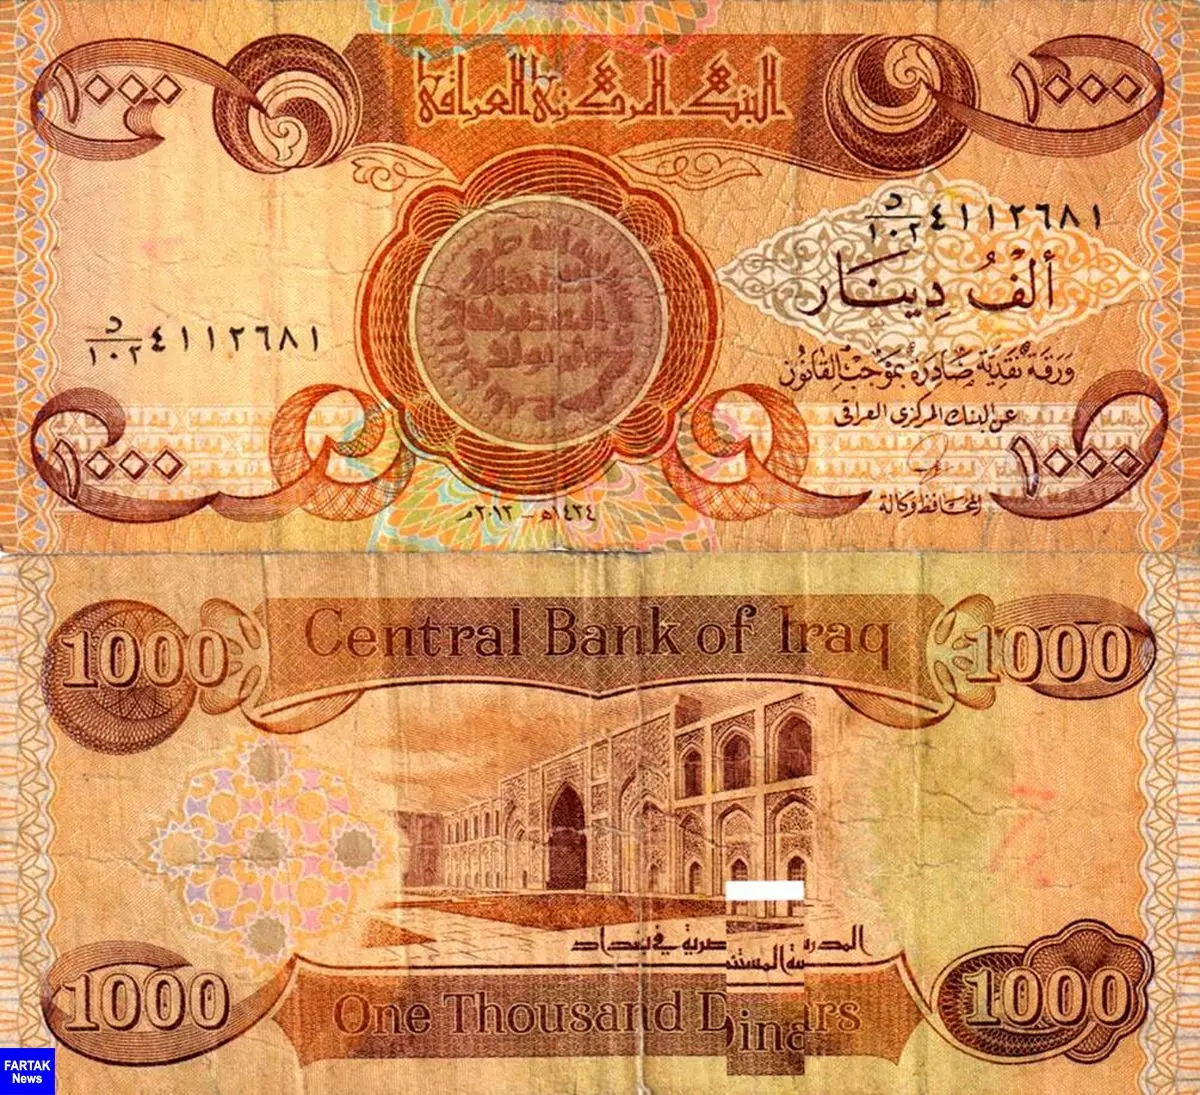 عراق ارزش دینار را 20 درصد کاهش داد